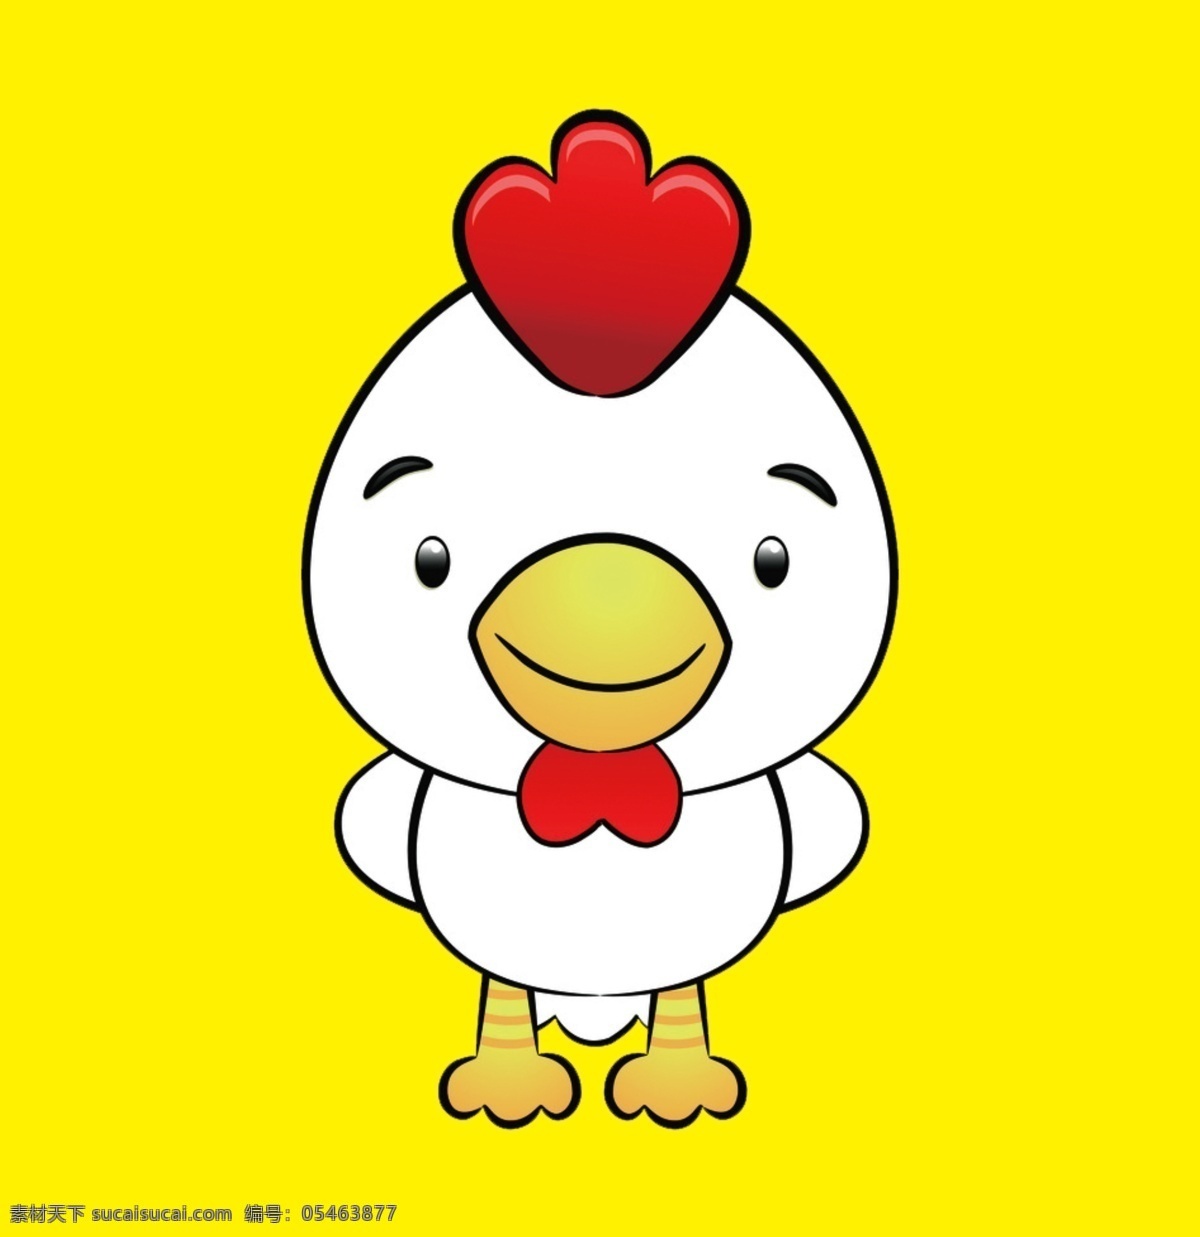 鸡 logo 可爱小鸡 卡通鸡 鸡先生 标志图标 企业 标志